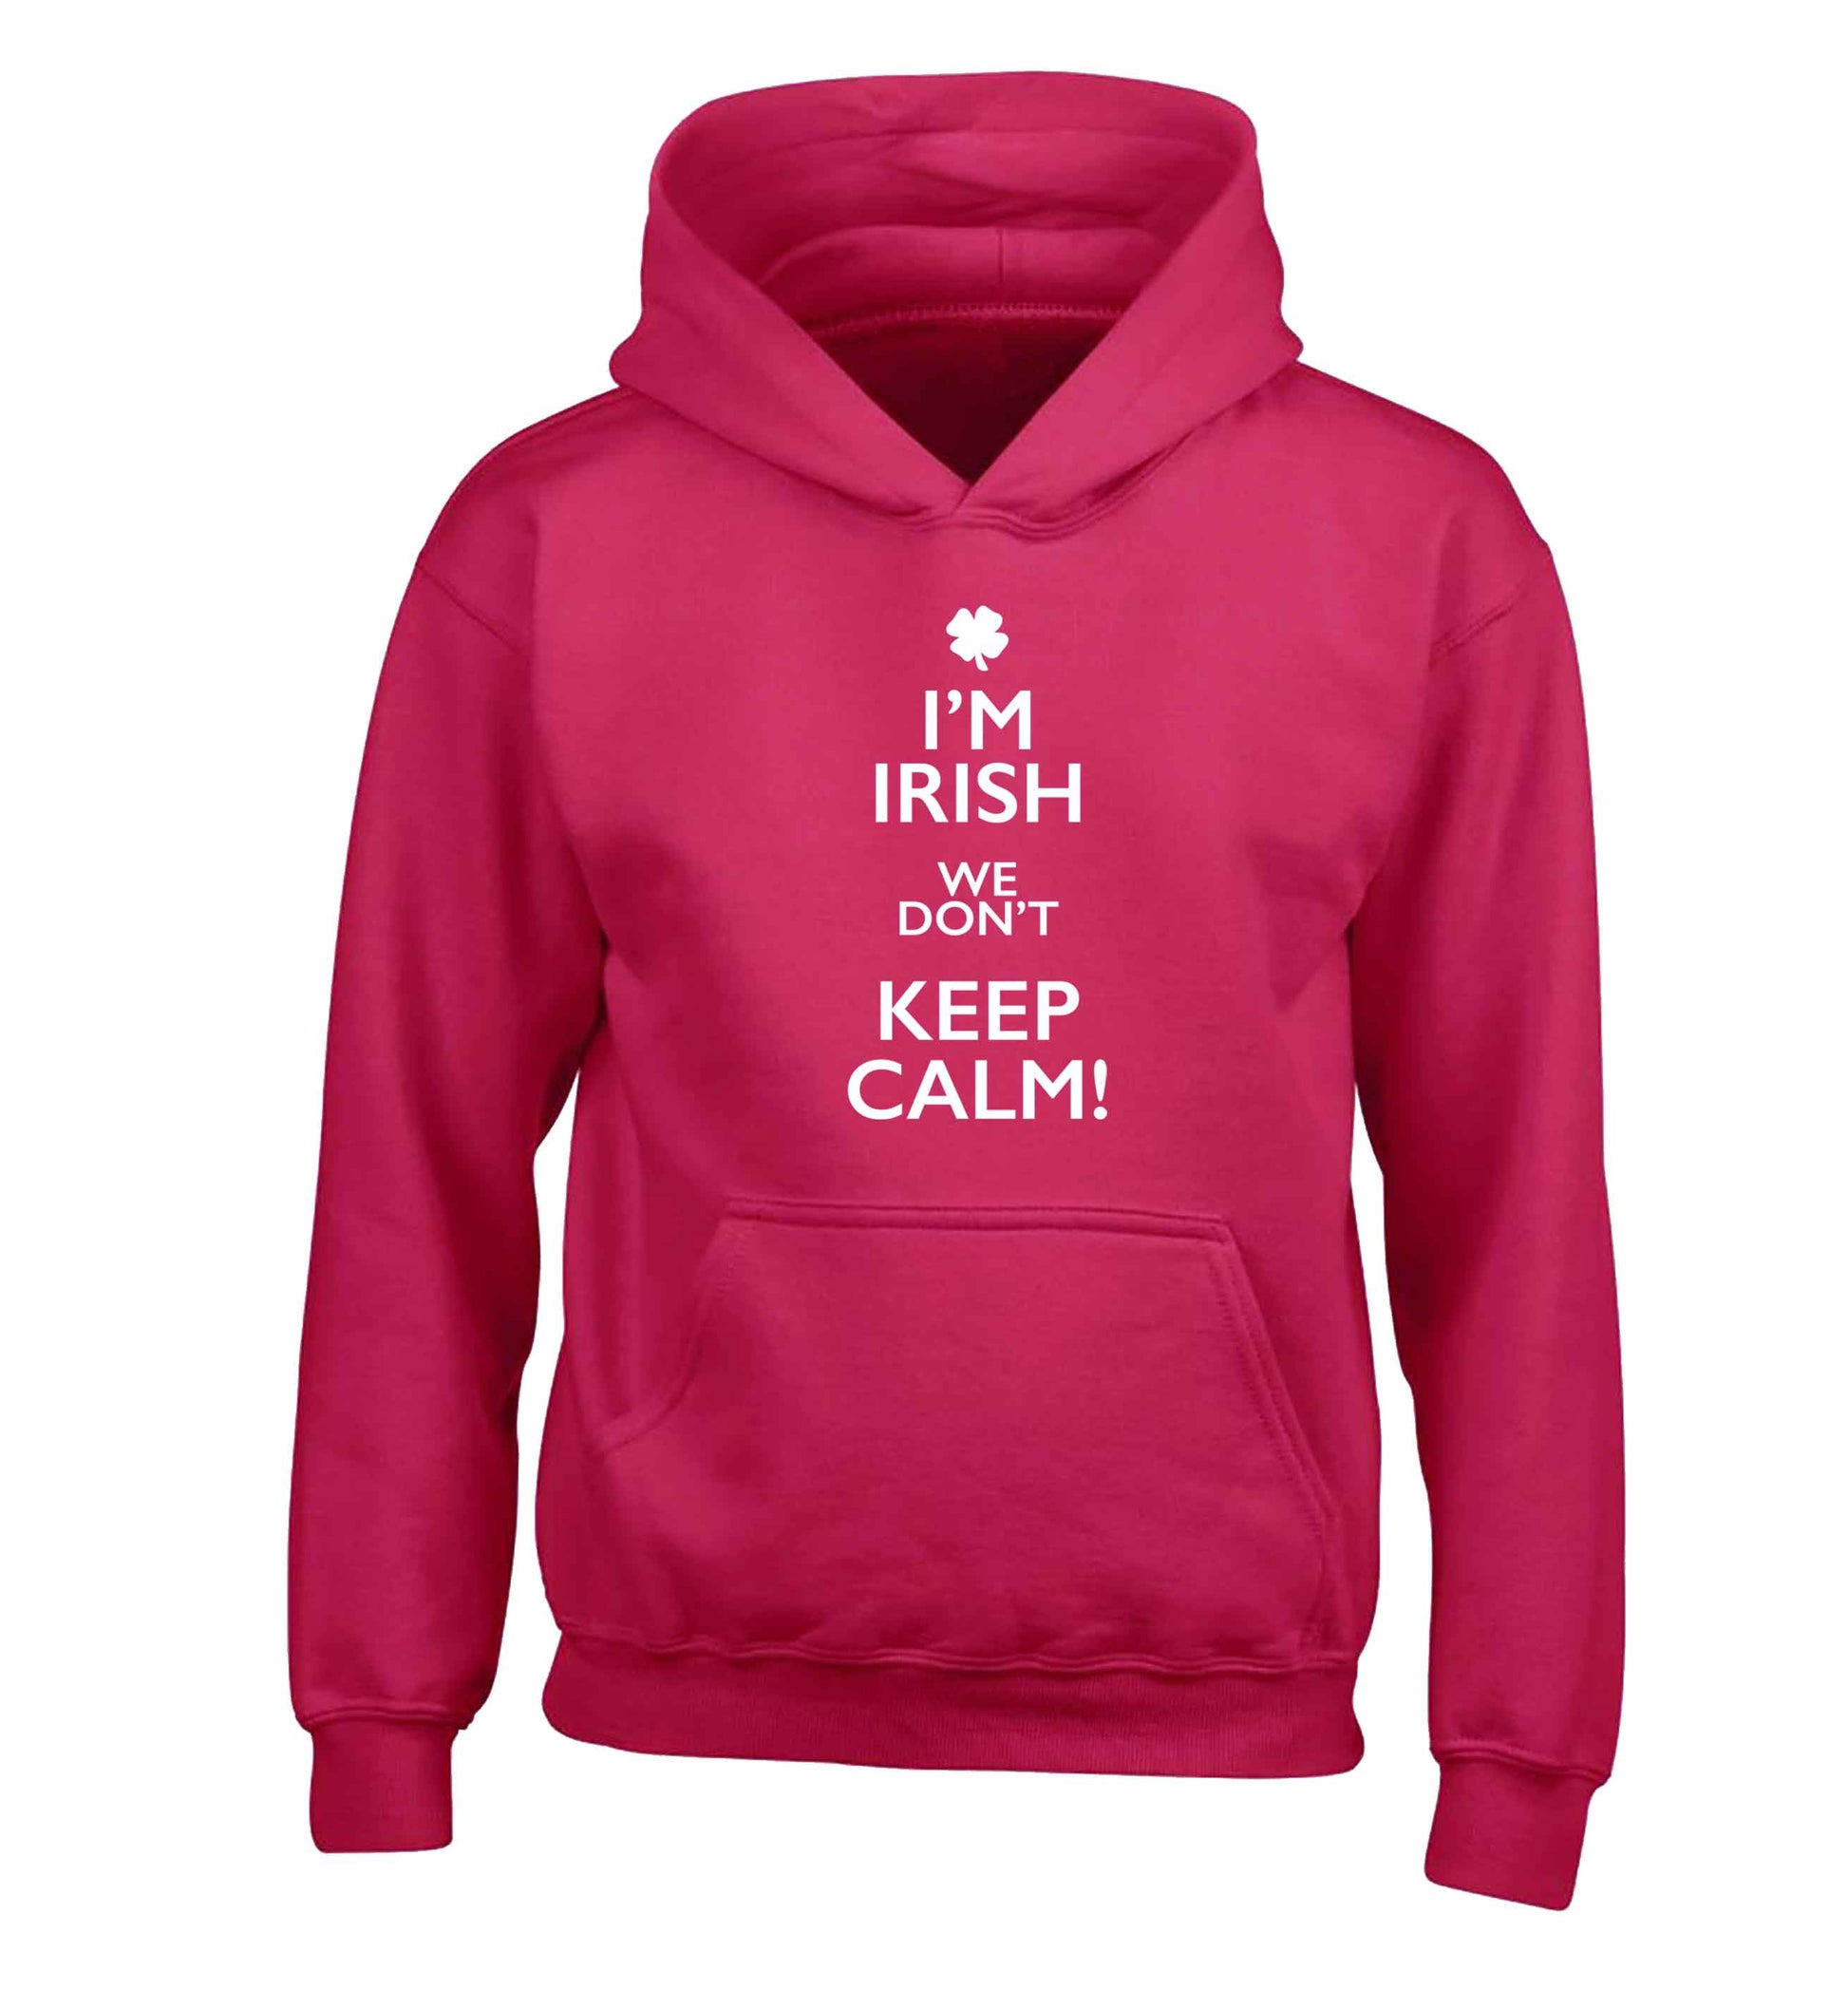 I'm Irish we don't keep calm children's pink hoodie 12-13 Years